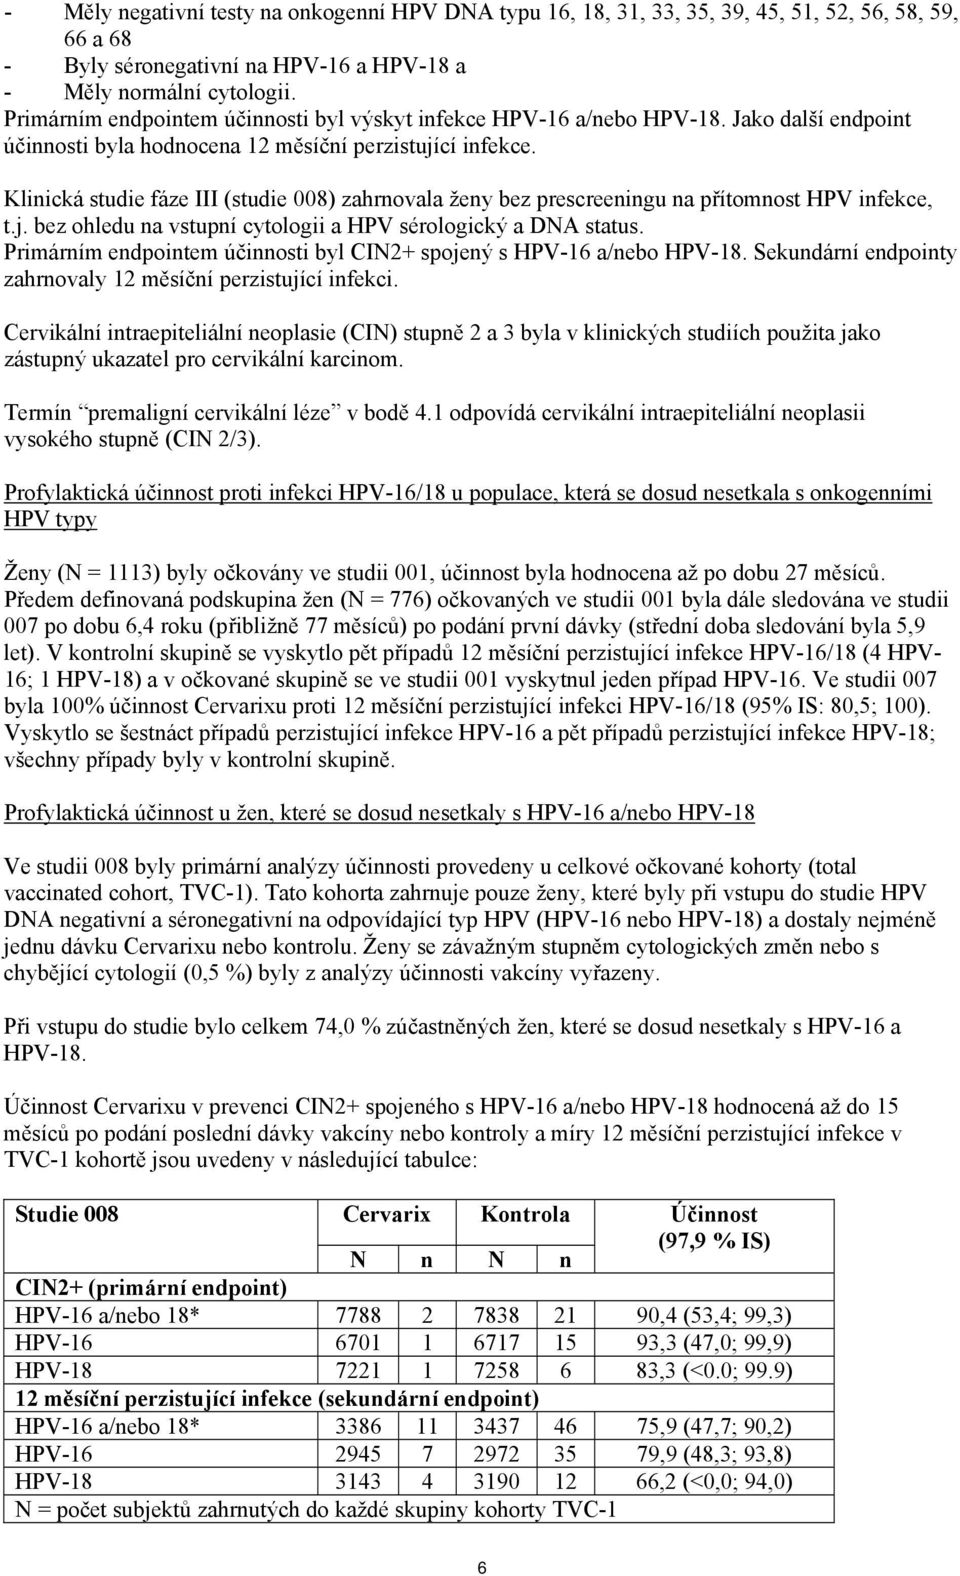 Klinická studie fáze III (studie 008) zahrnovala ženy bez prescreeningu na přítomnost HPV infekce, t.j. bez ohledu na vstupní cytologii a HPV sérologický a DNA status.